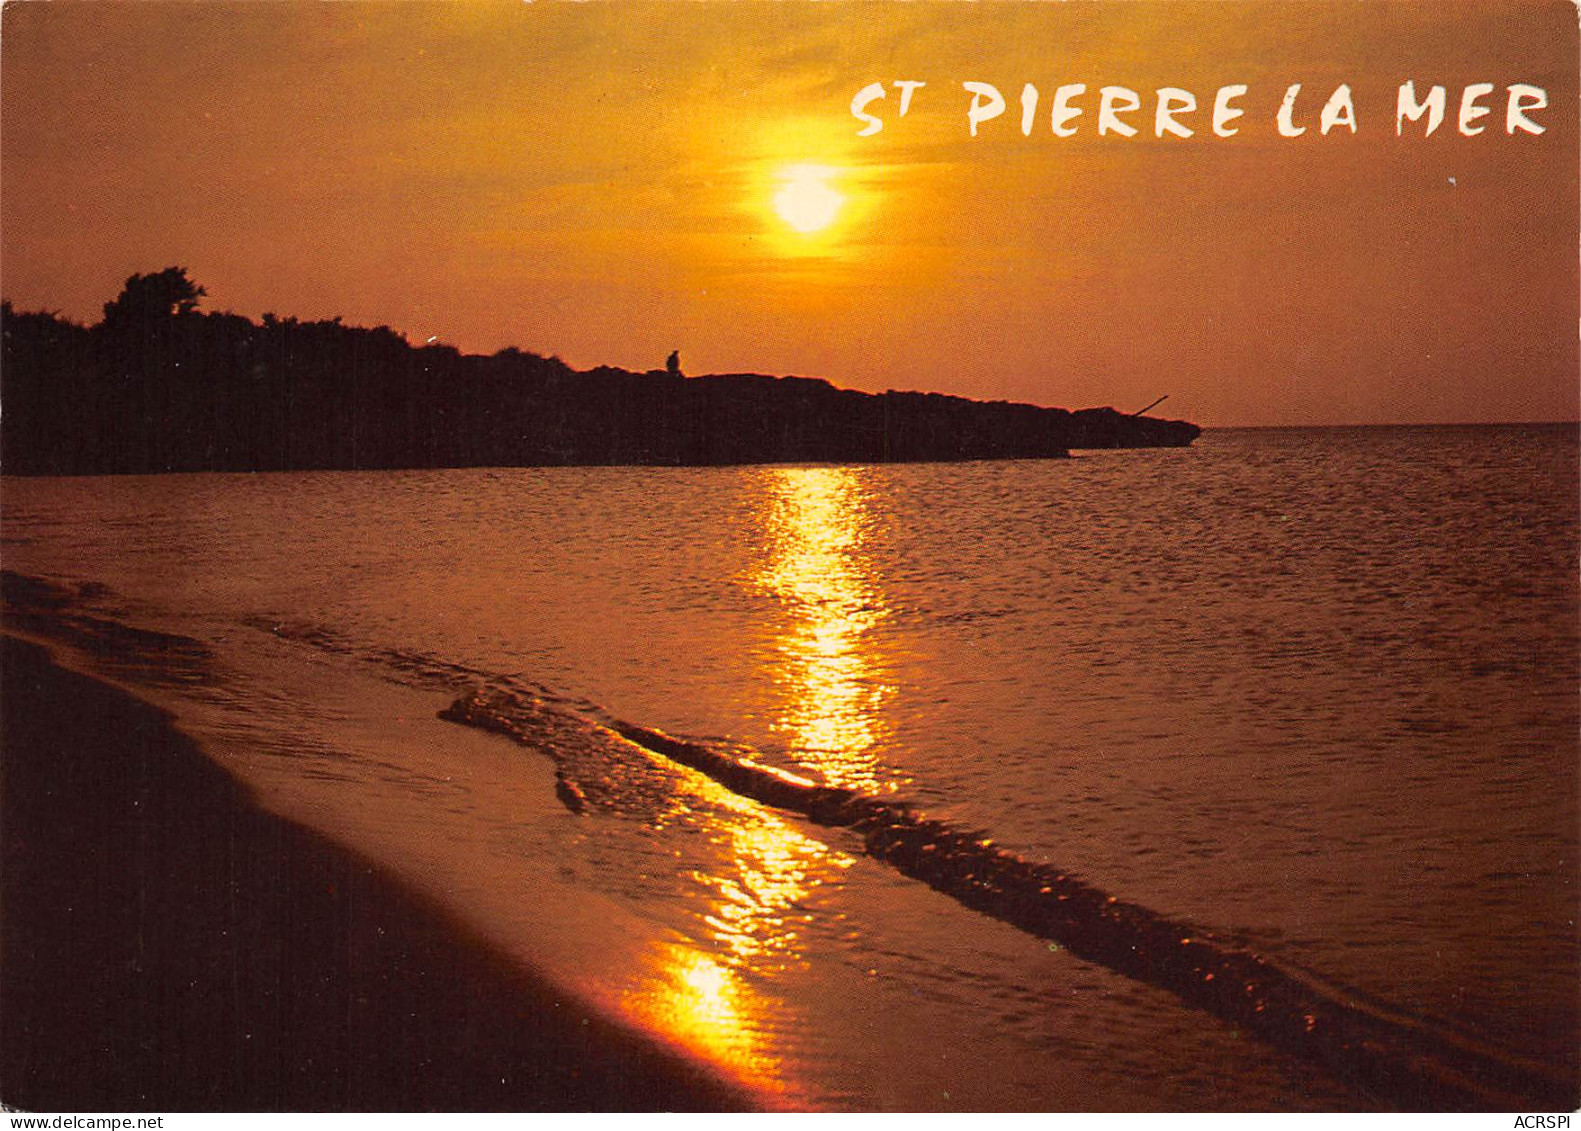 SAINT PIERRE LA MER Aurore Sur Le Rocher LAVALLIERE   48 (scan Recto Verso)ME2648BIS - Autres & Non Classés